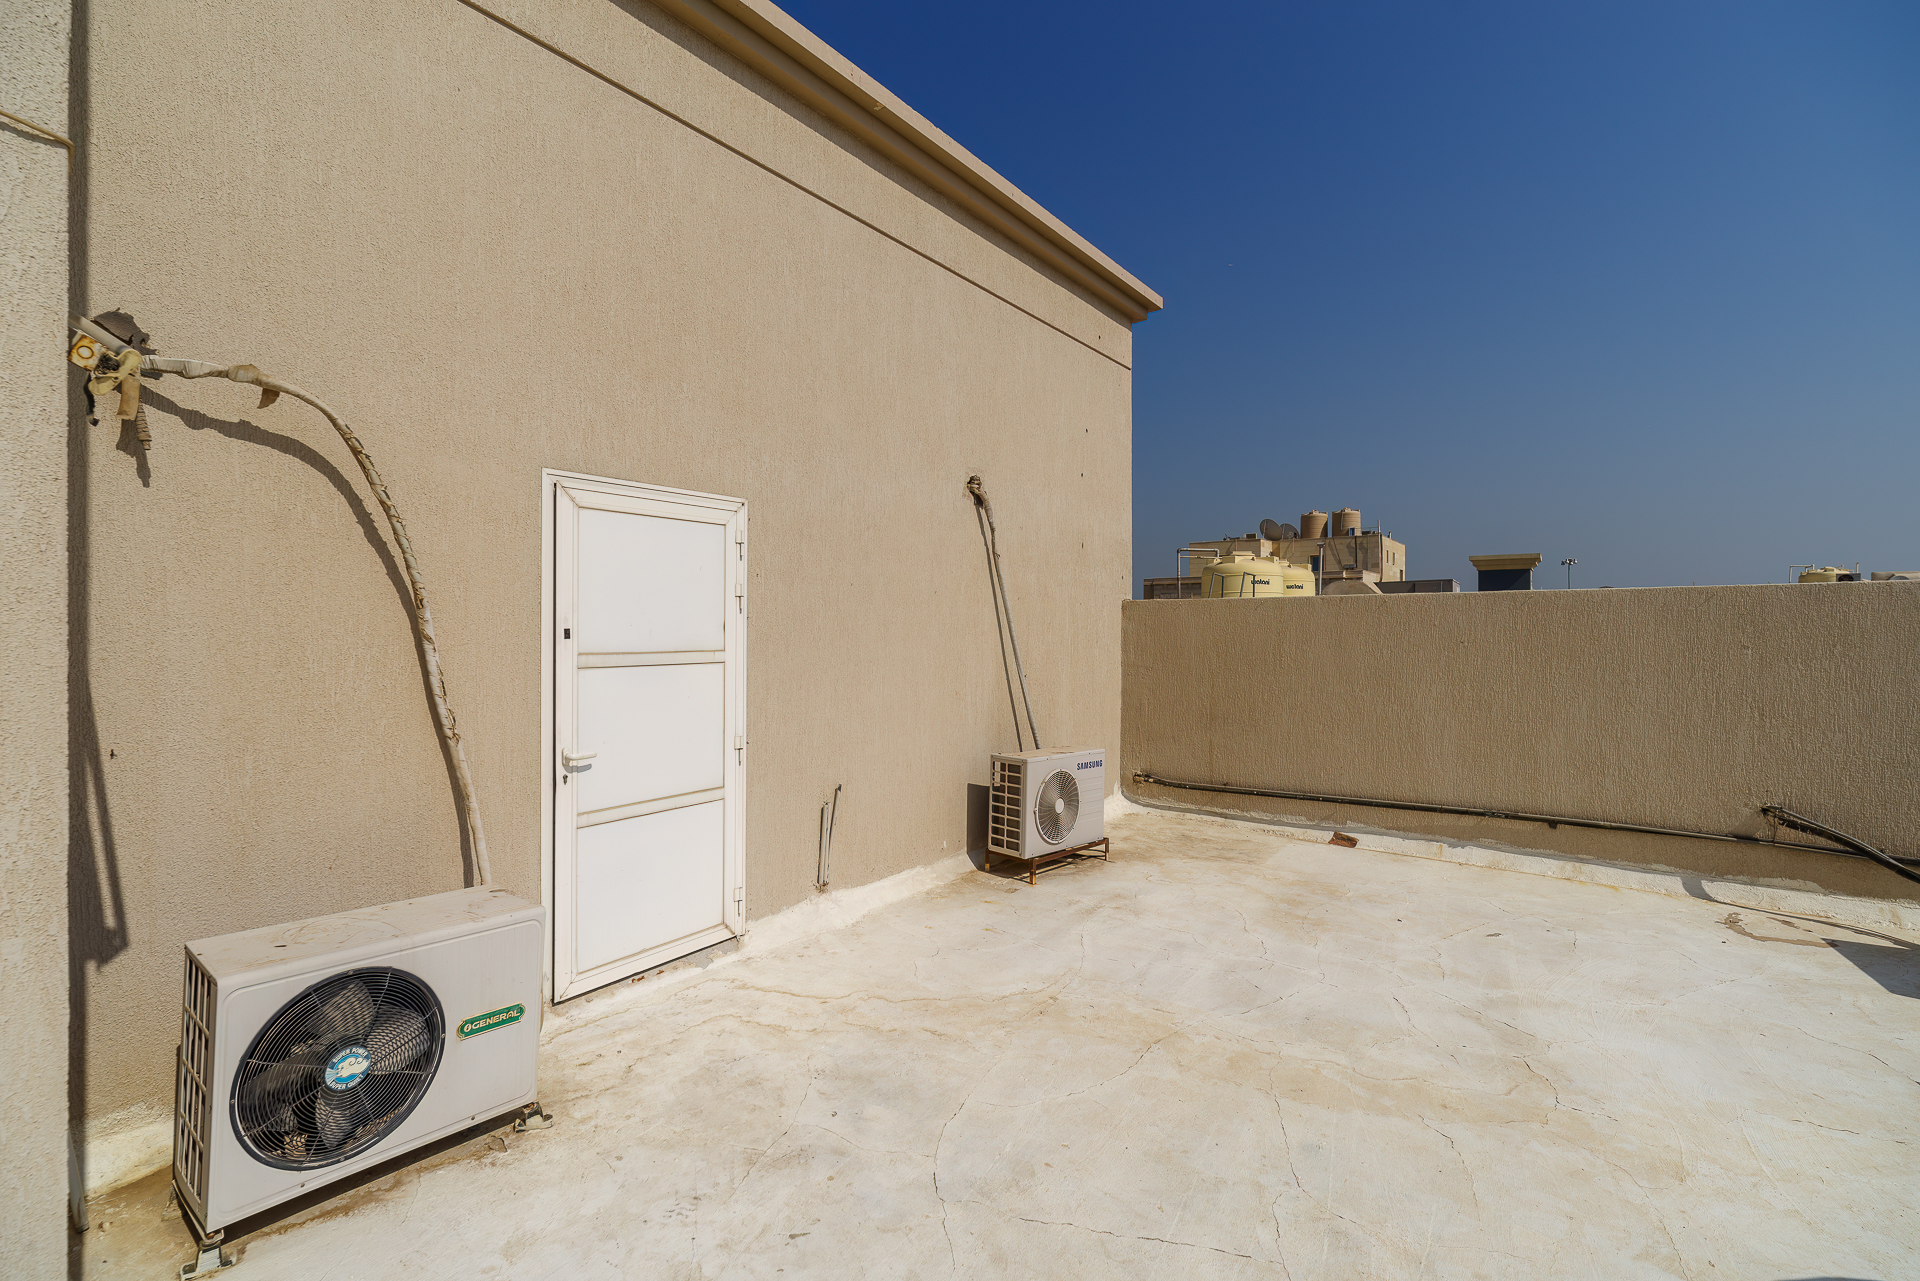 Fahad Al Ahmad – unfurnnished, rooftop studio